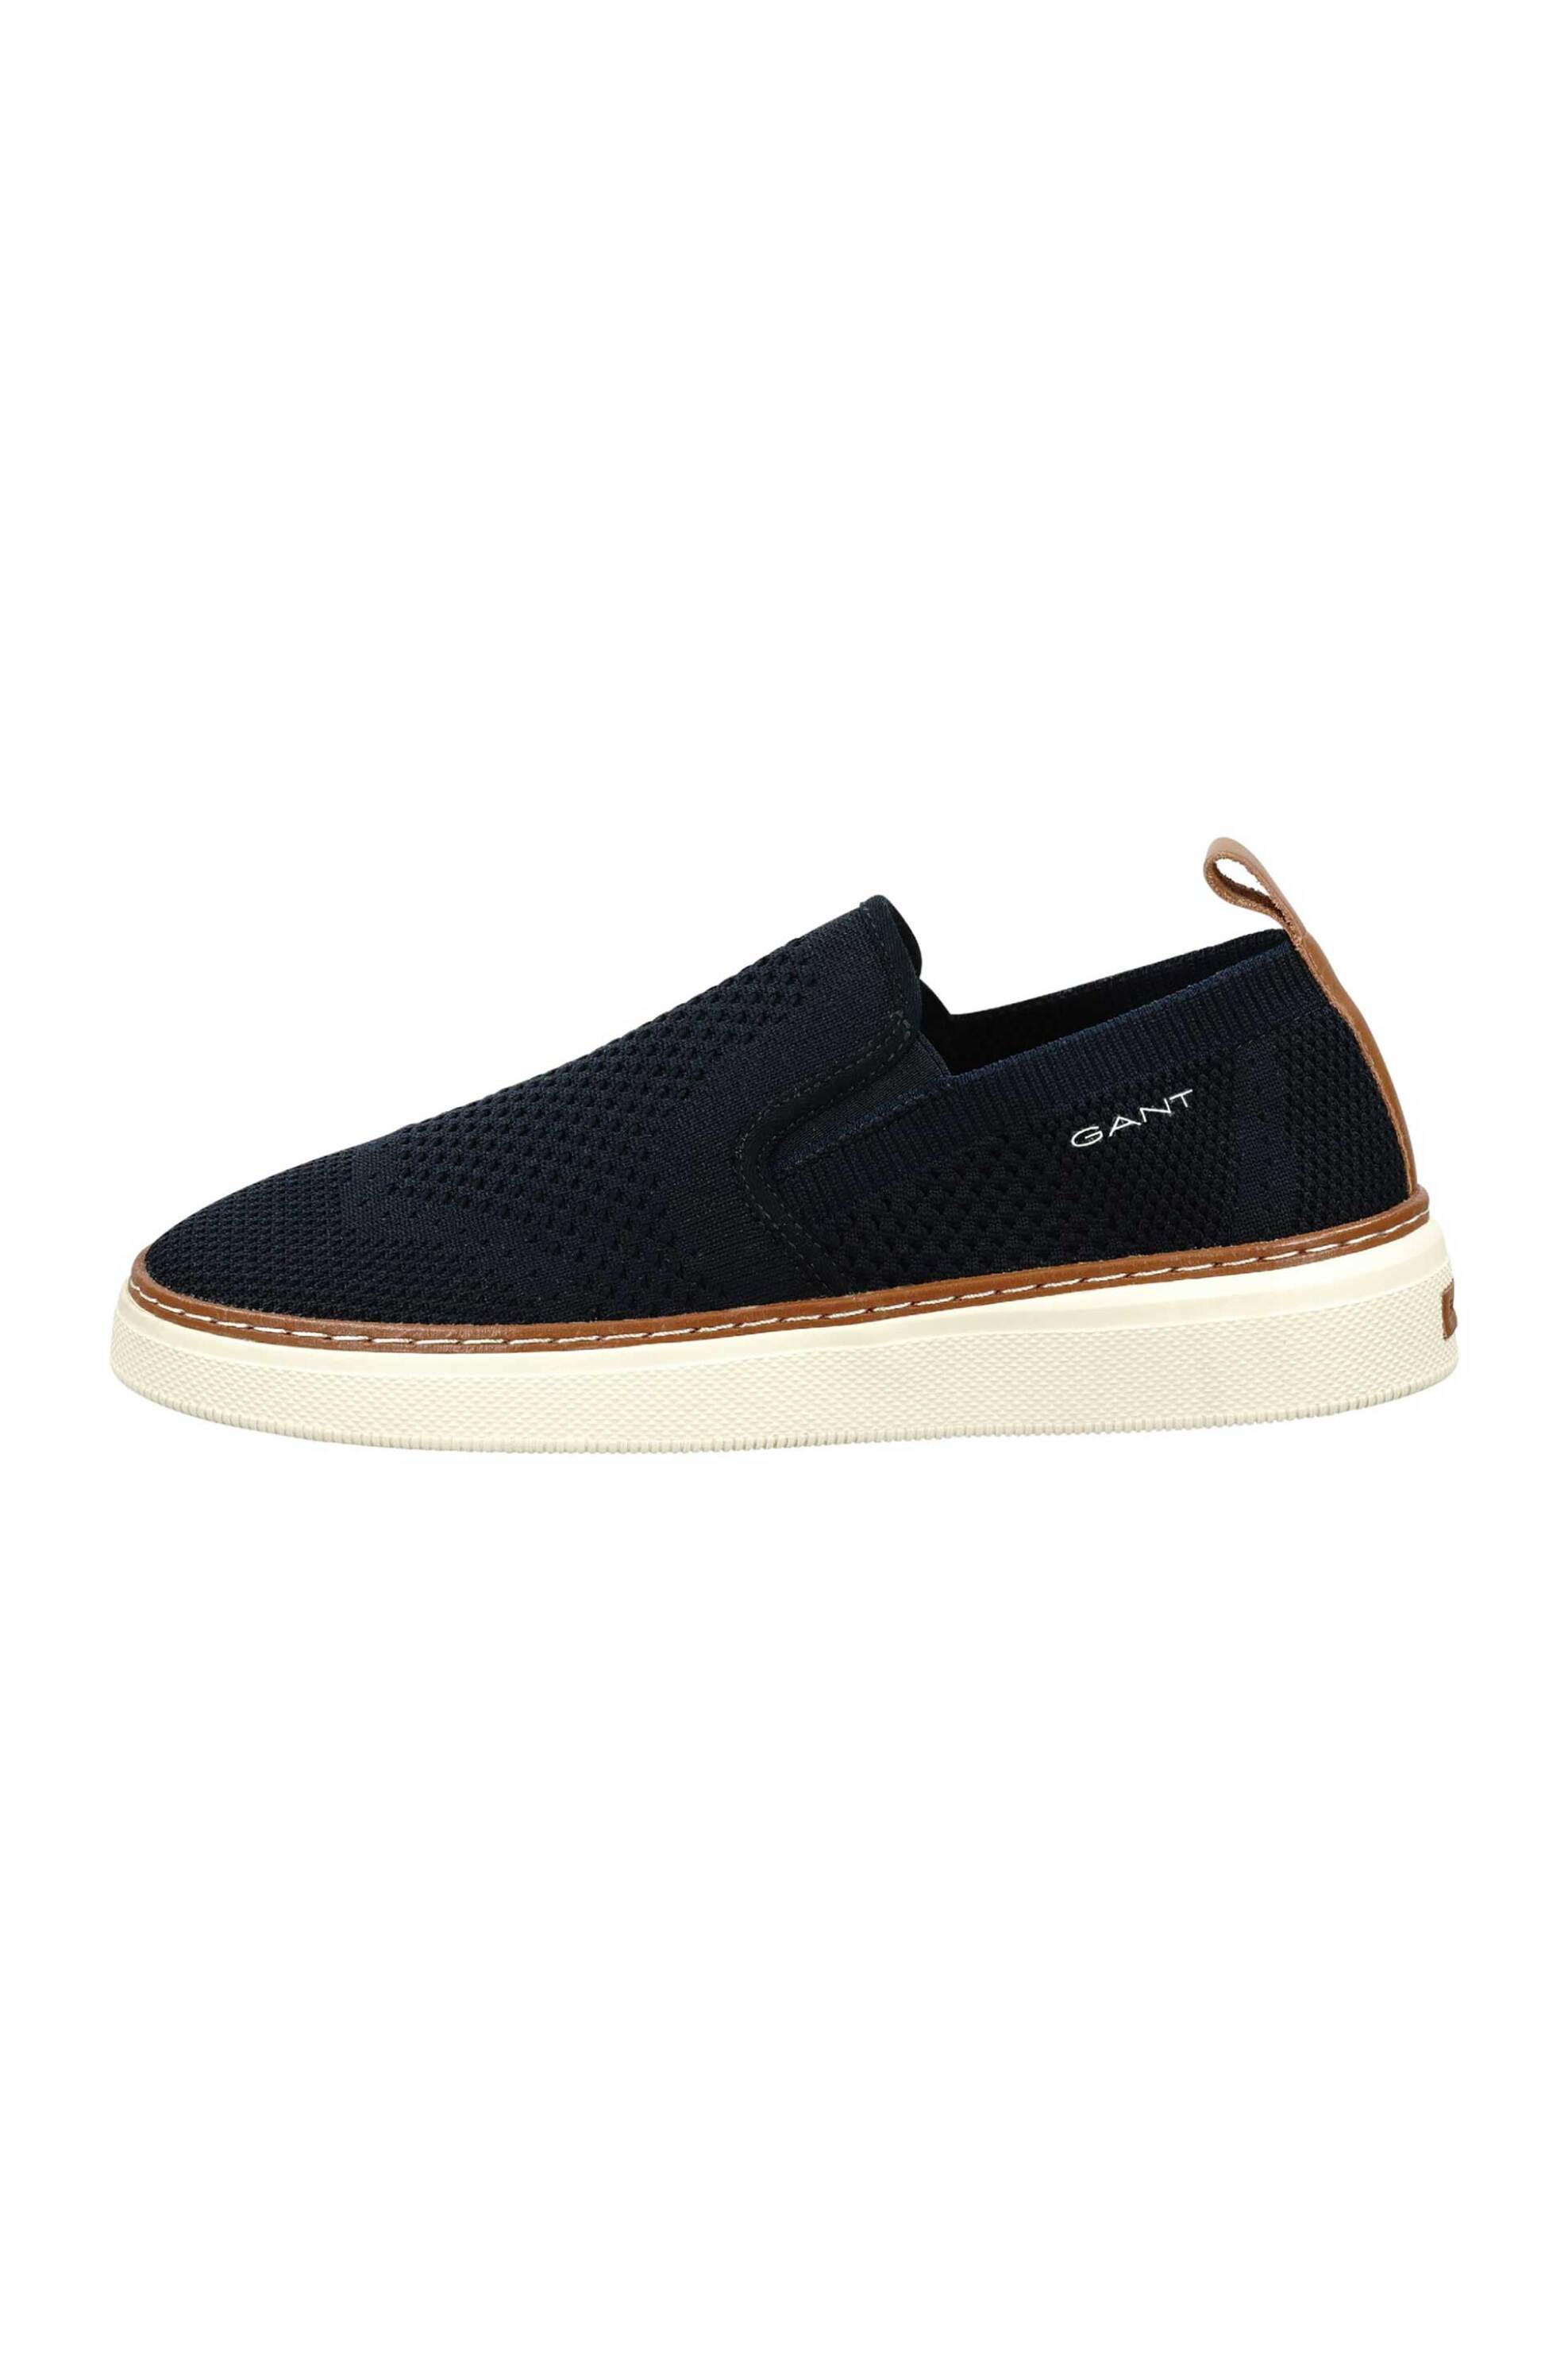 Ανδρική Μόδα > Ανδρικά Παπούτσια > Ανδρικά Μοκασίνια & Loafers Gant ανδρικά loafers με πλεκτό σχέδιο "San Prep" - 28638611 Μπλε Σκούρο